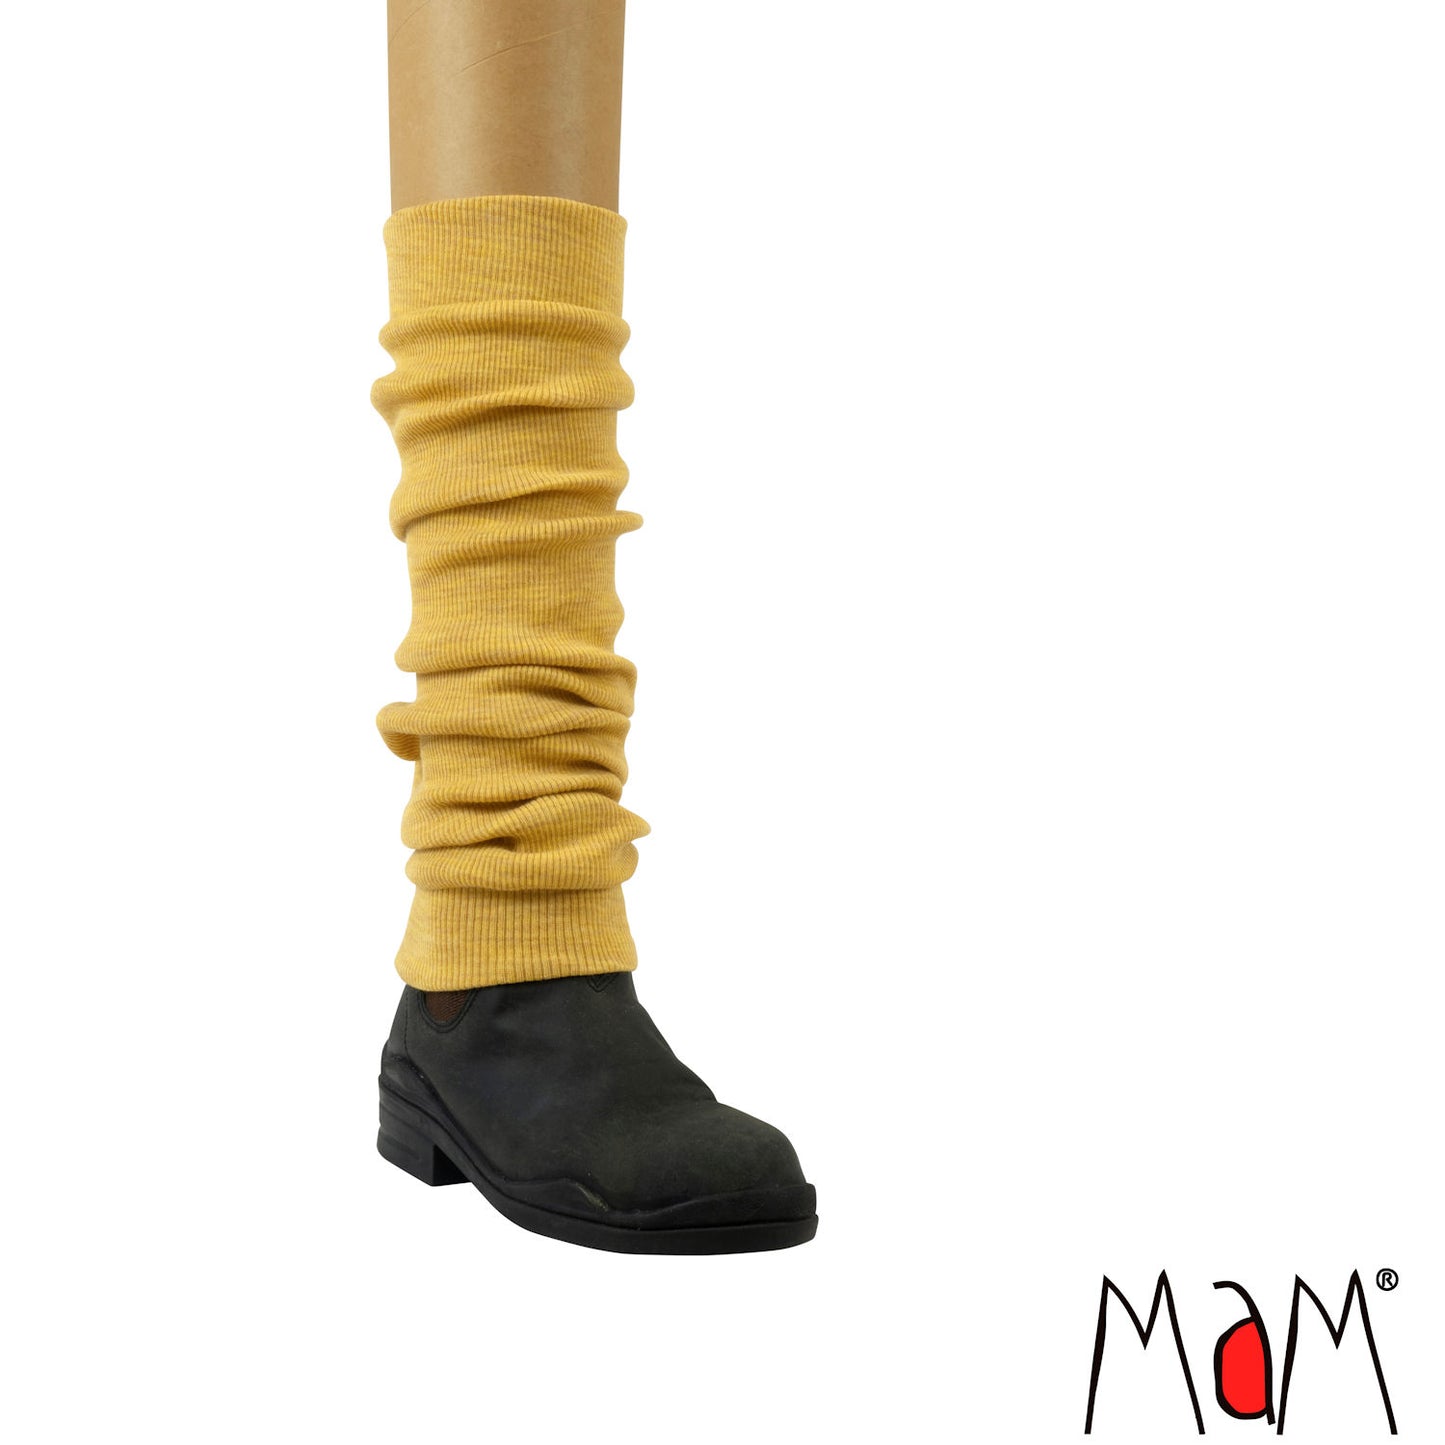 MaM Natural Woollies Leg Warmers